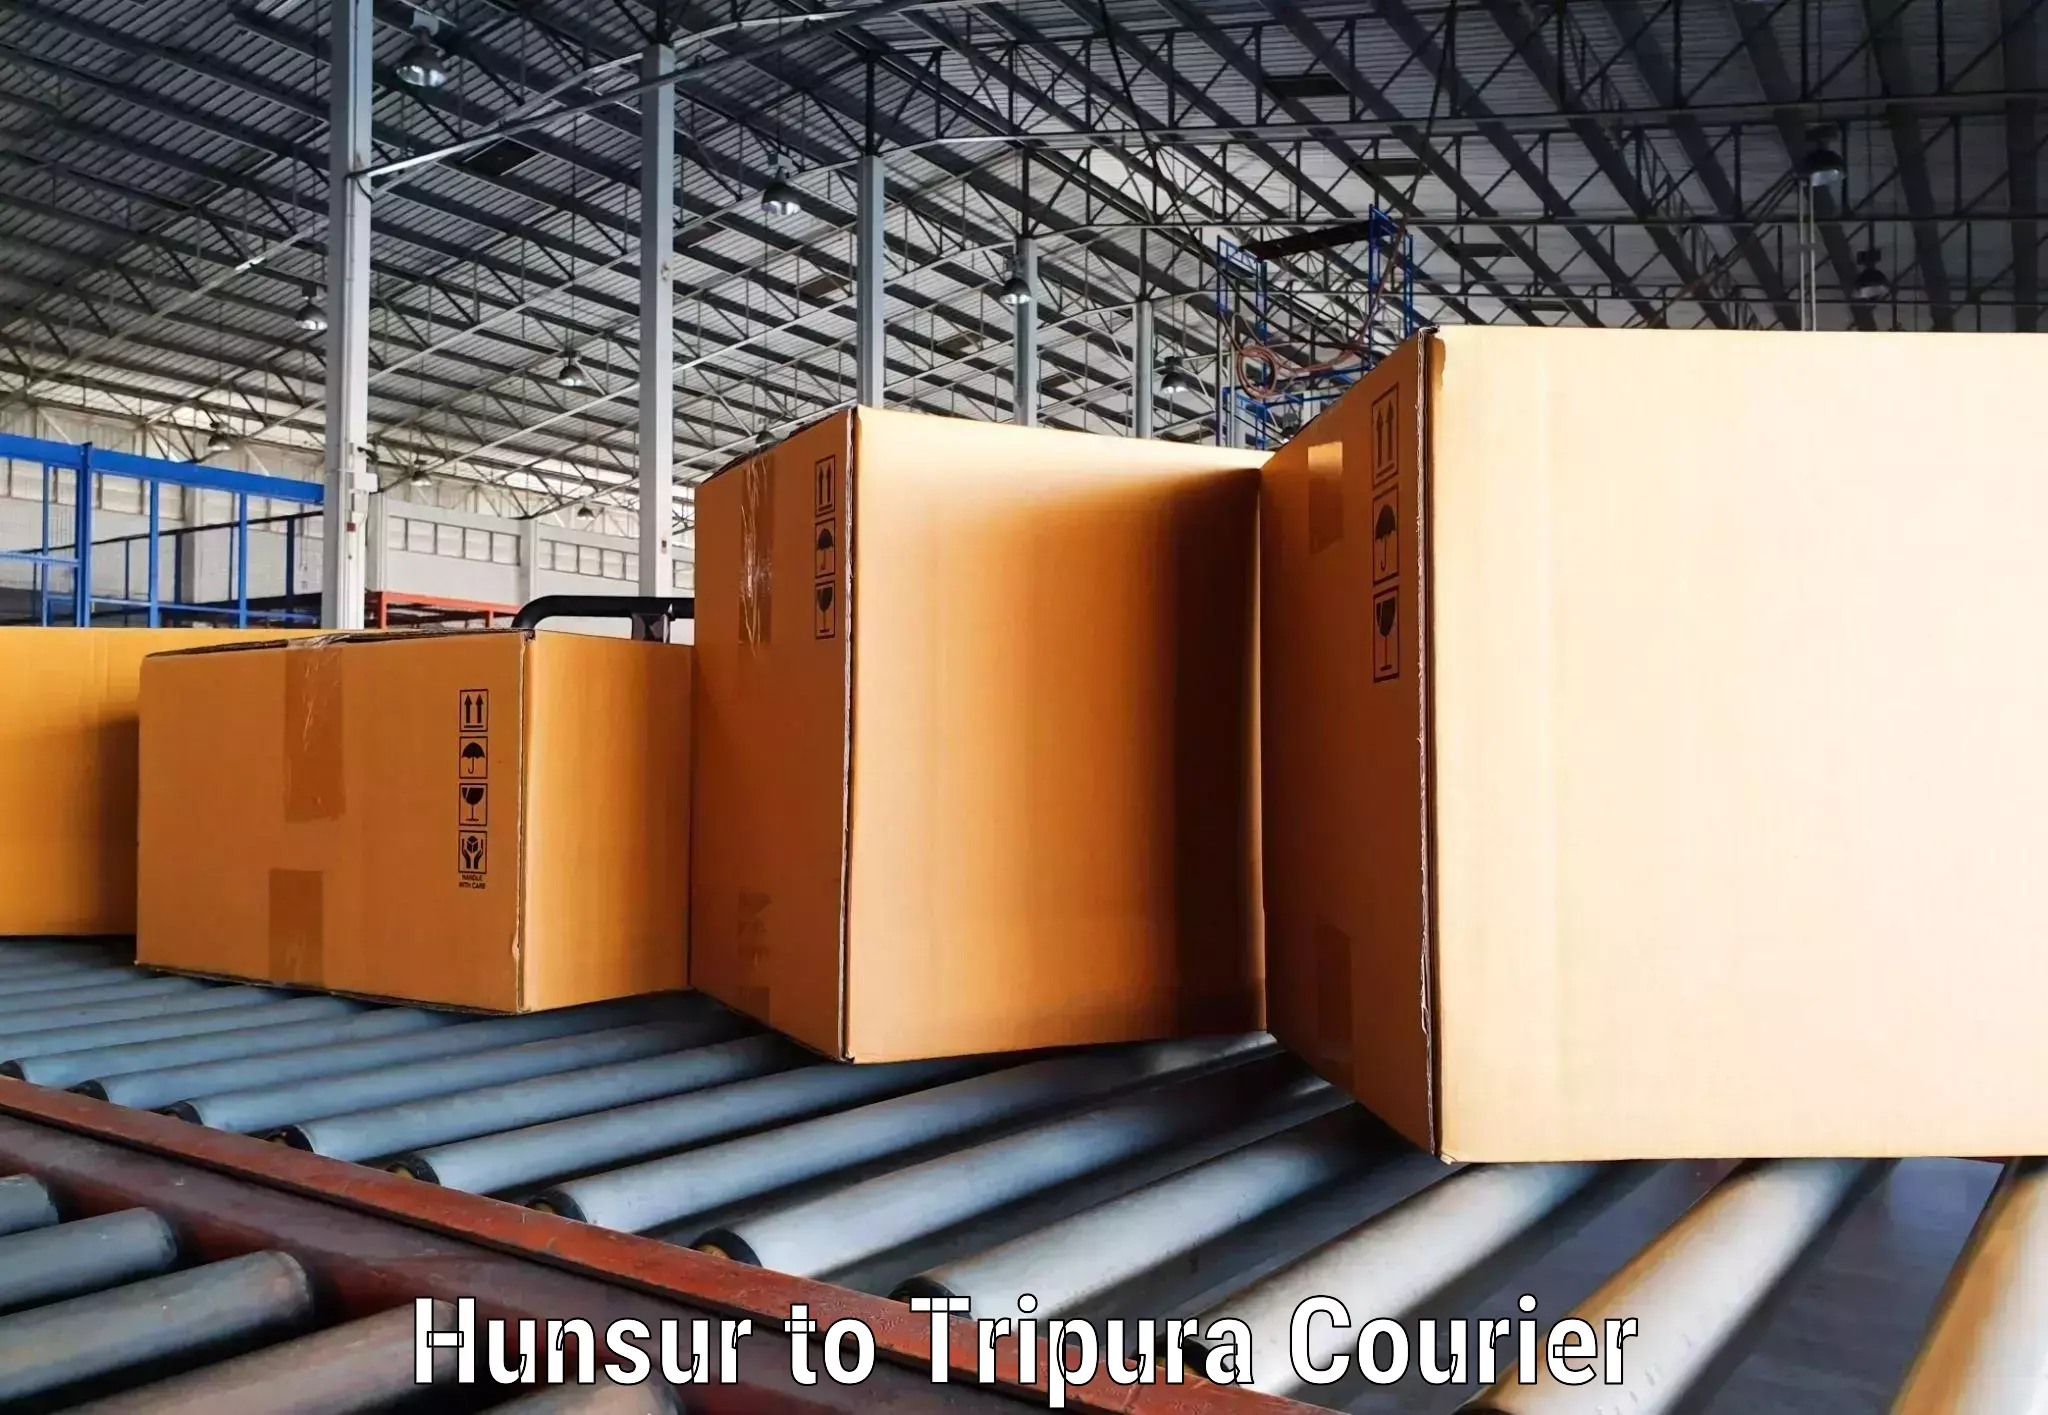 Courier rate comparison Hunsur to Udaipur Tripura